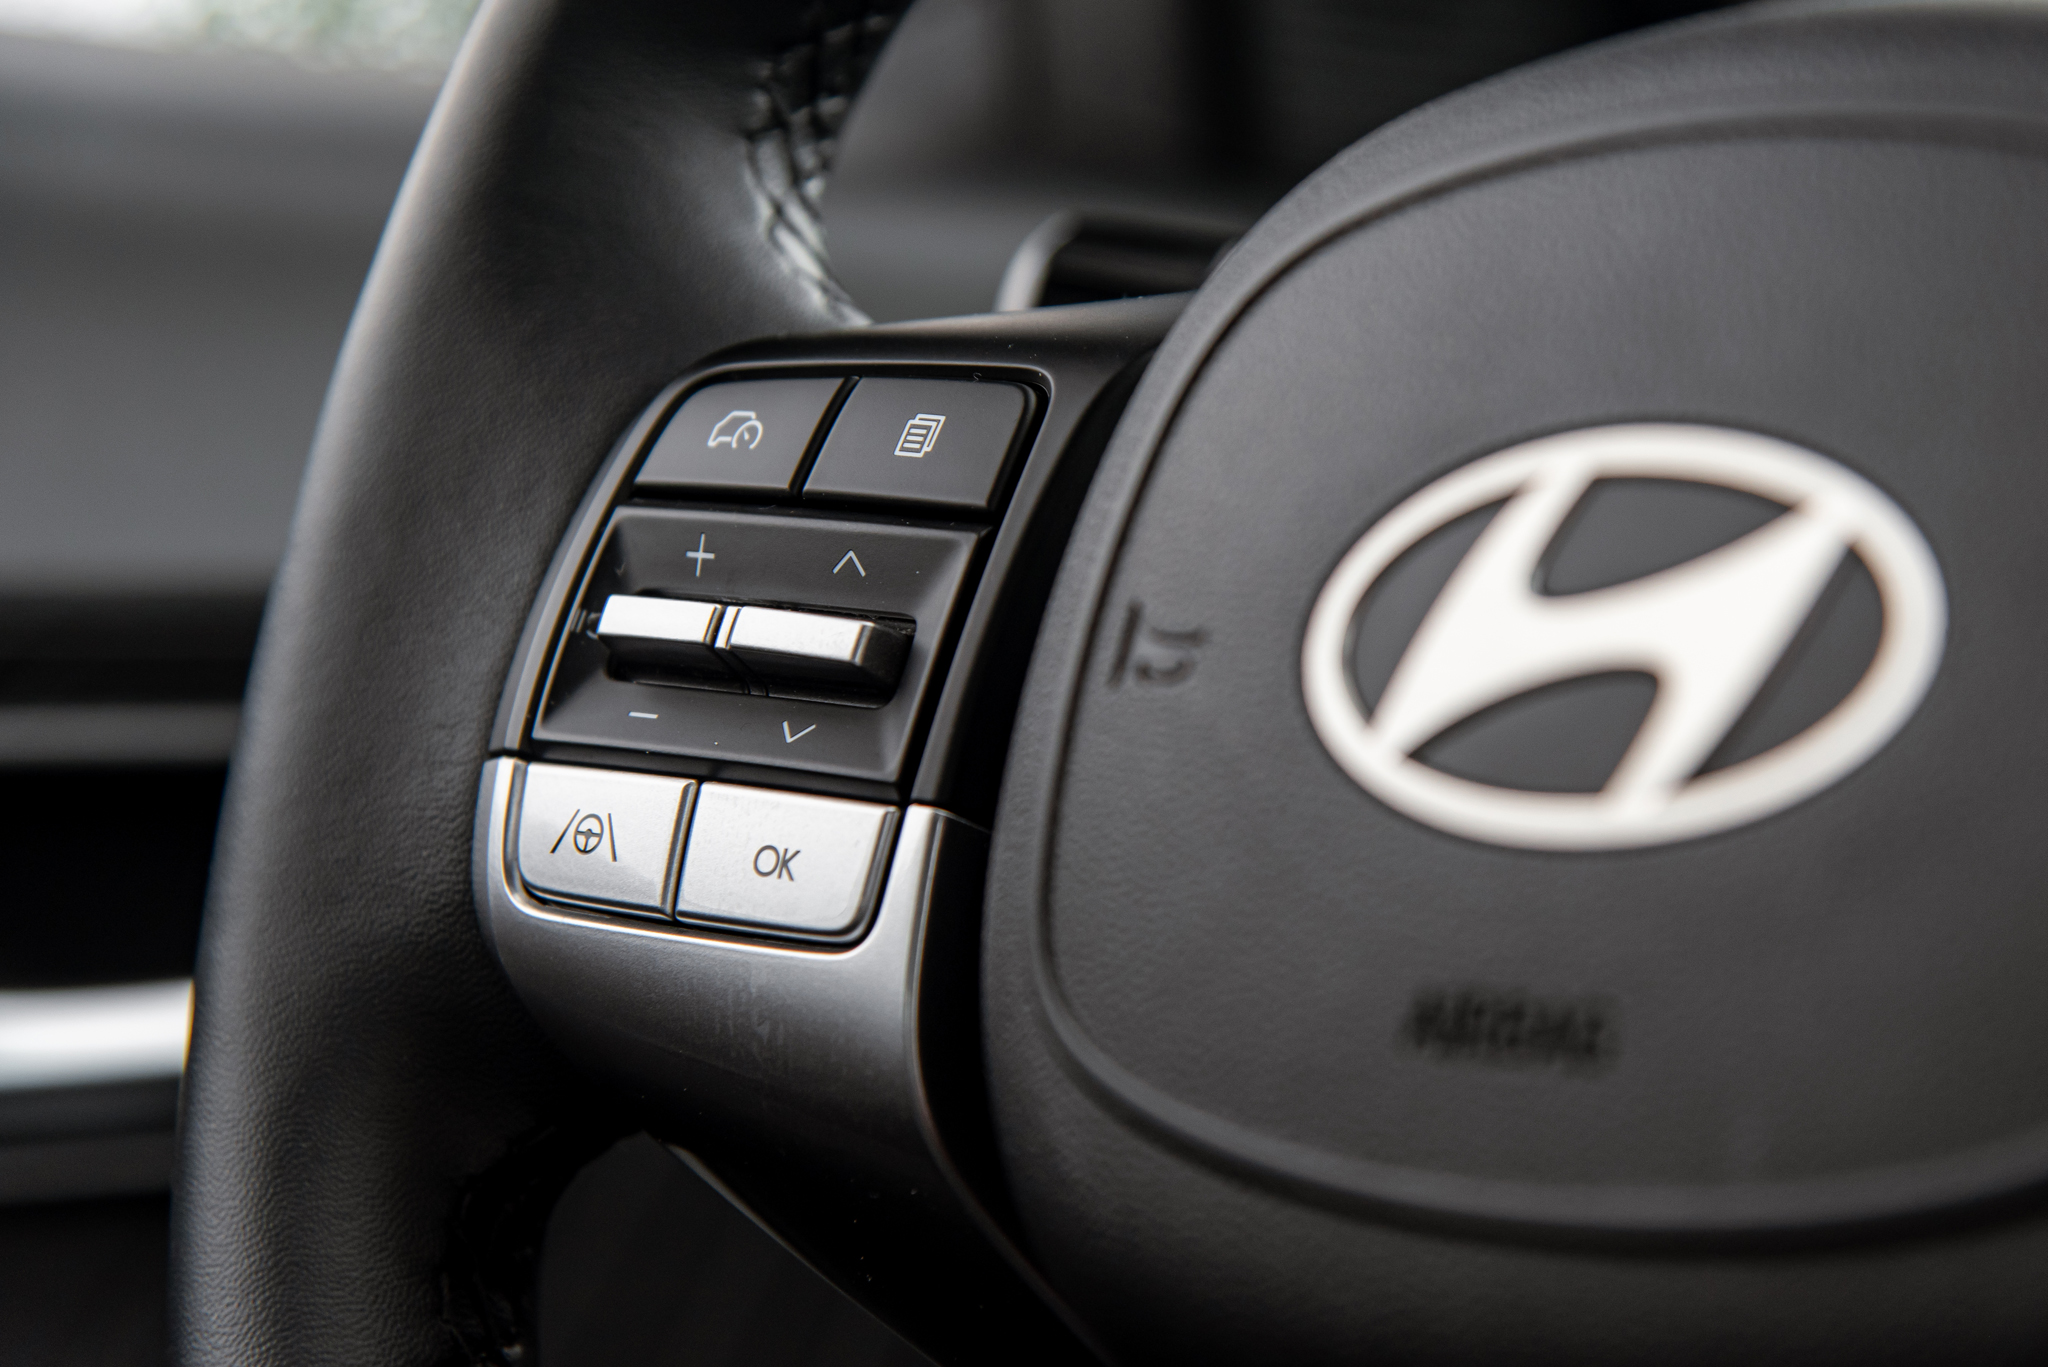 Đánh giá nhanh Hyundai Accent 2024 bản cao nhất: Thay đổi toàn diện, ăn điểm vận hành